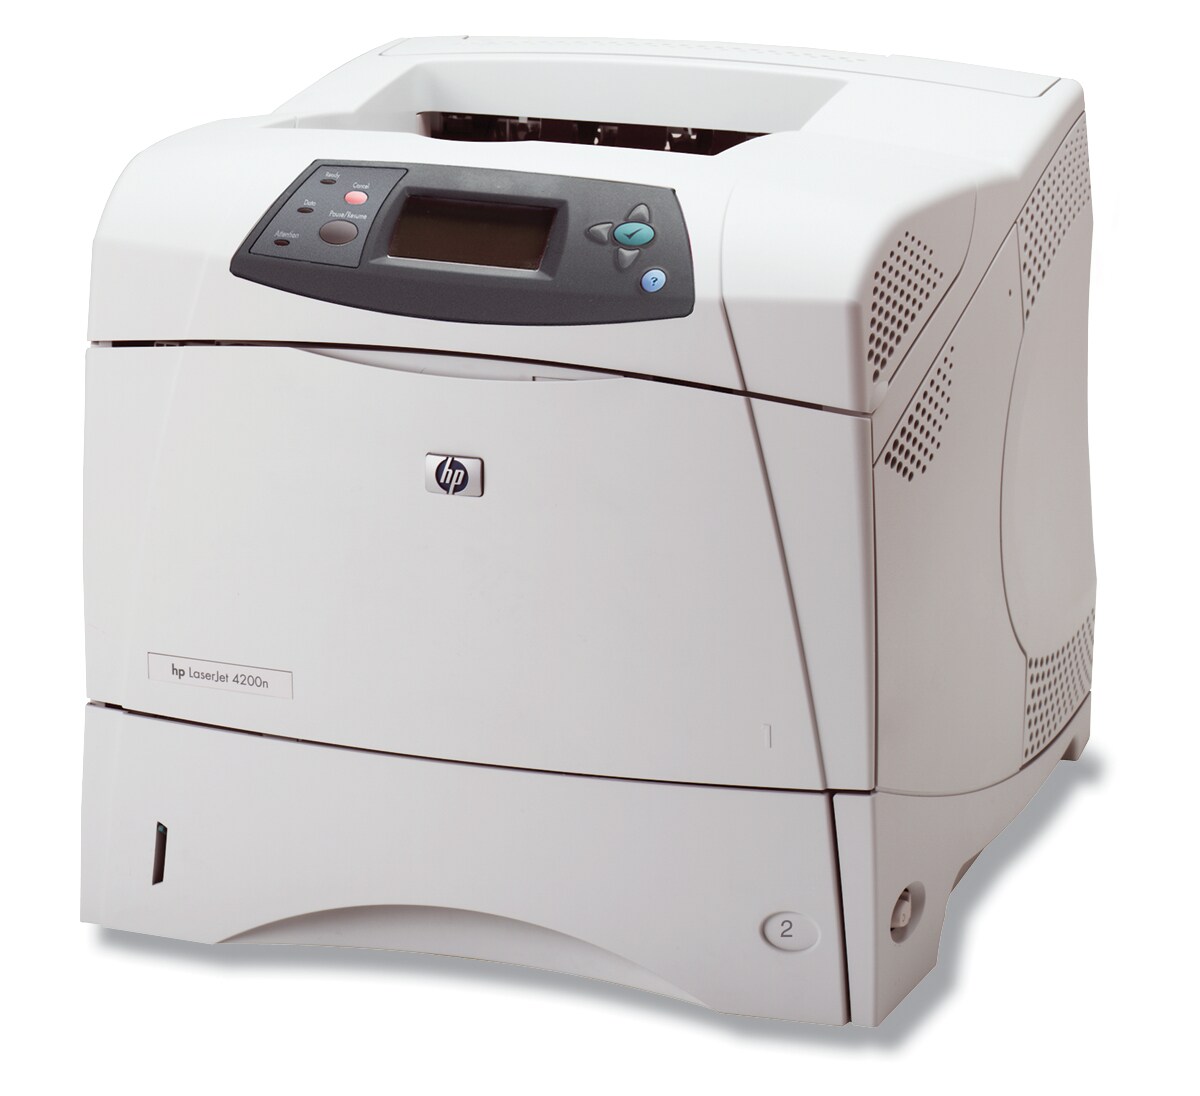 HP LJ 4200n LaserJet